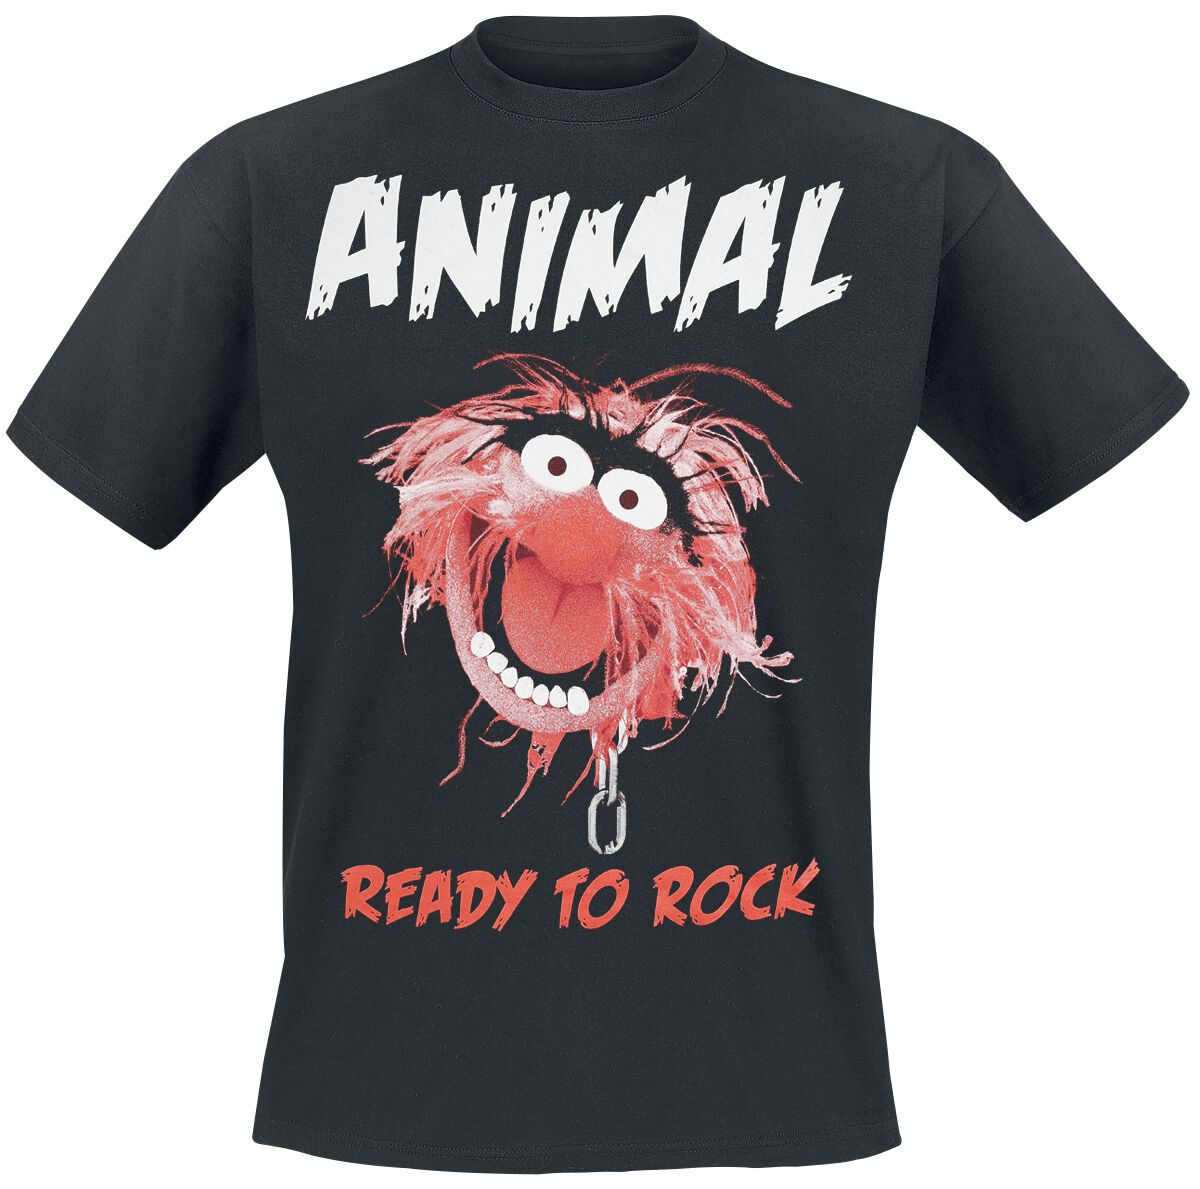 Die Muppets T-Shirt - Animal - Ready To Rock - S bis XXL - für Männer - Größe S - schwarz  - EMP exklusives Merchandise!